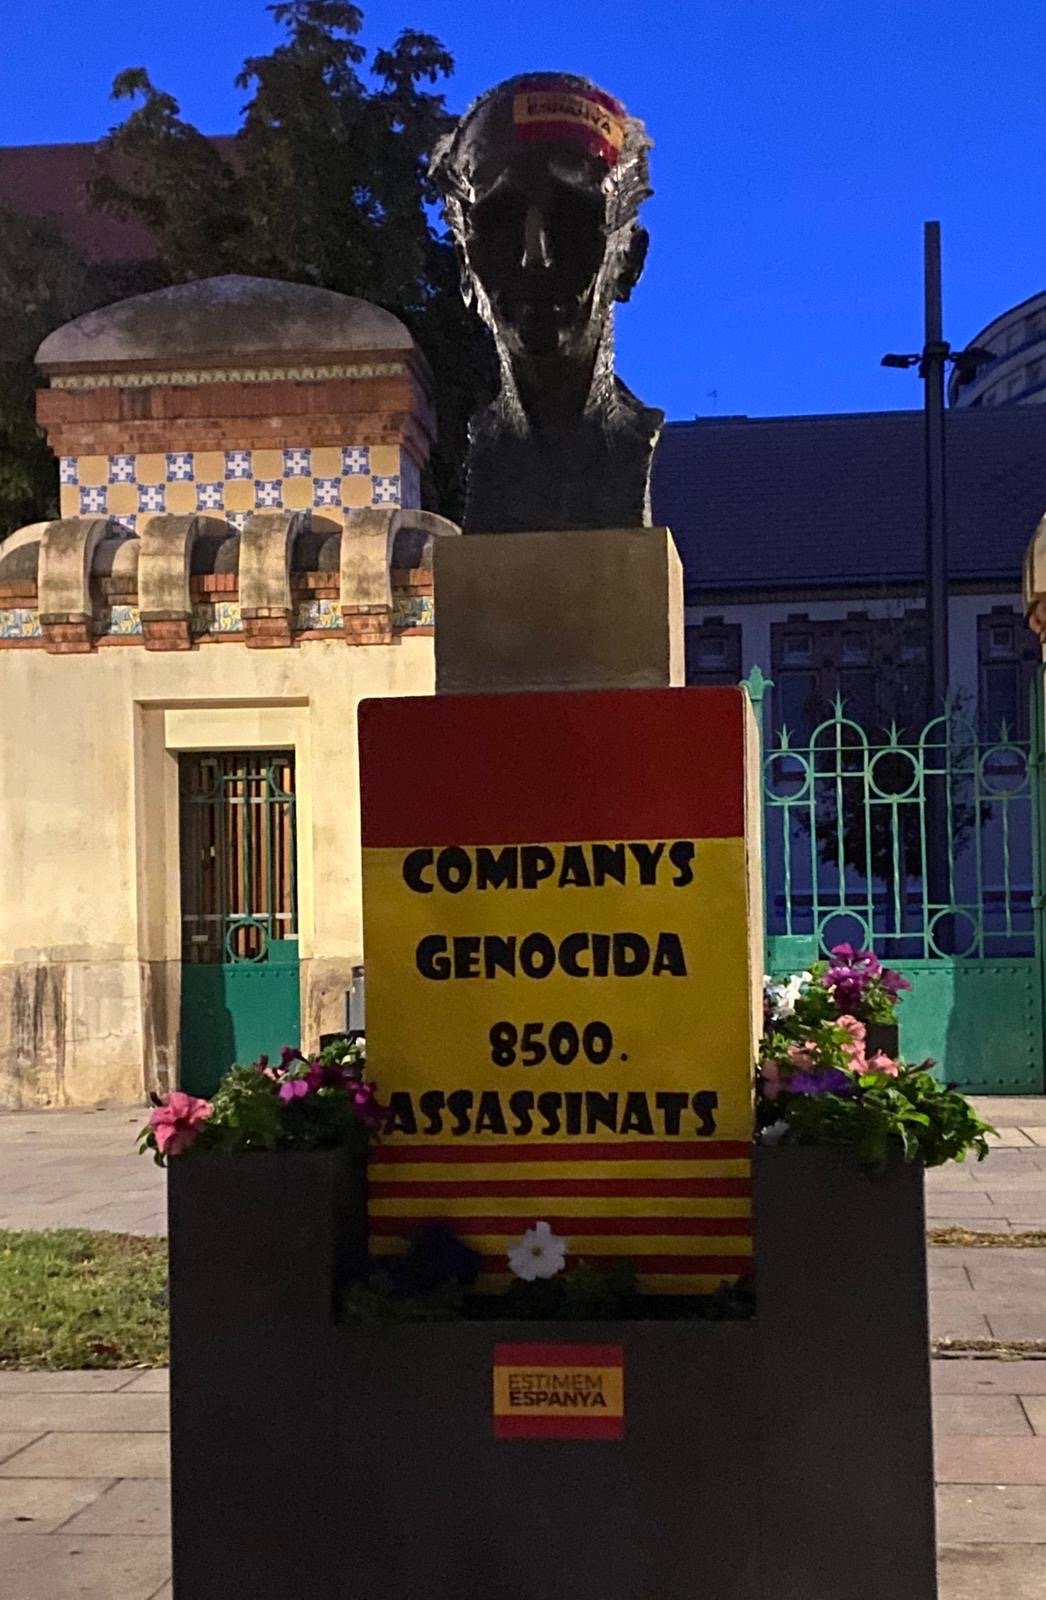 Atac vandàlic al bust de Companys de Lleida en motiu del 12-O